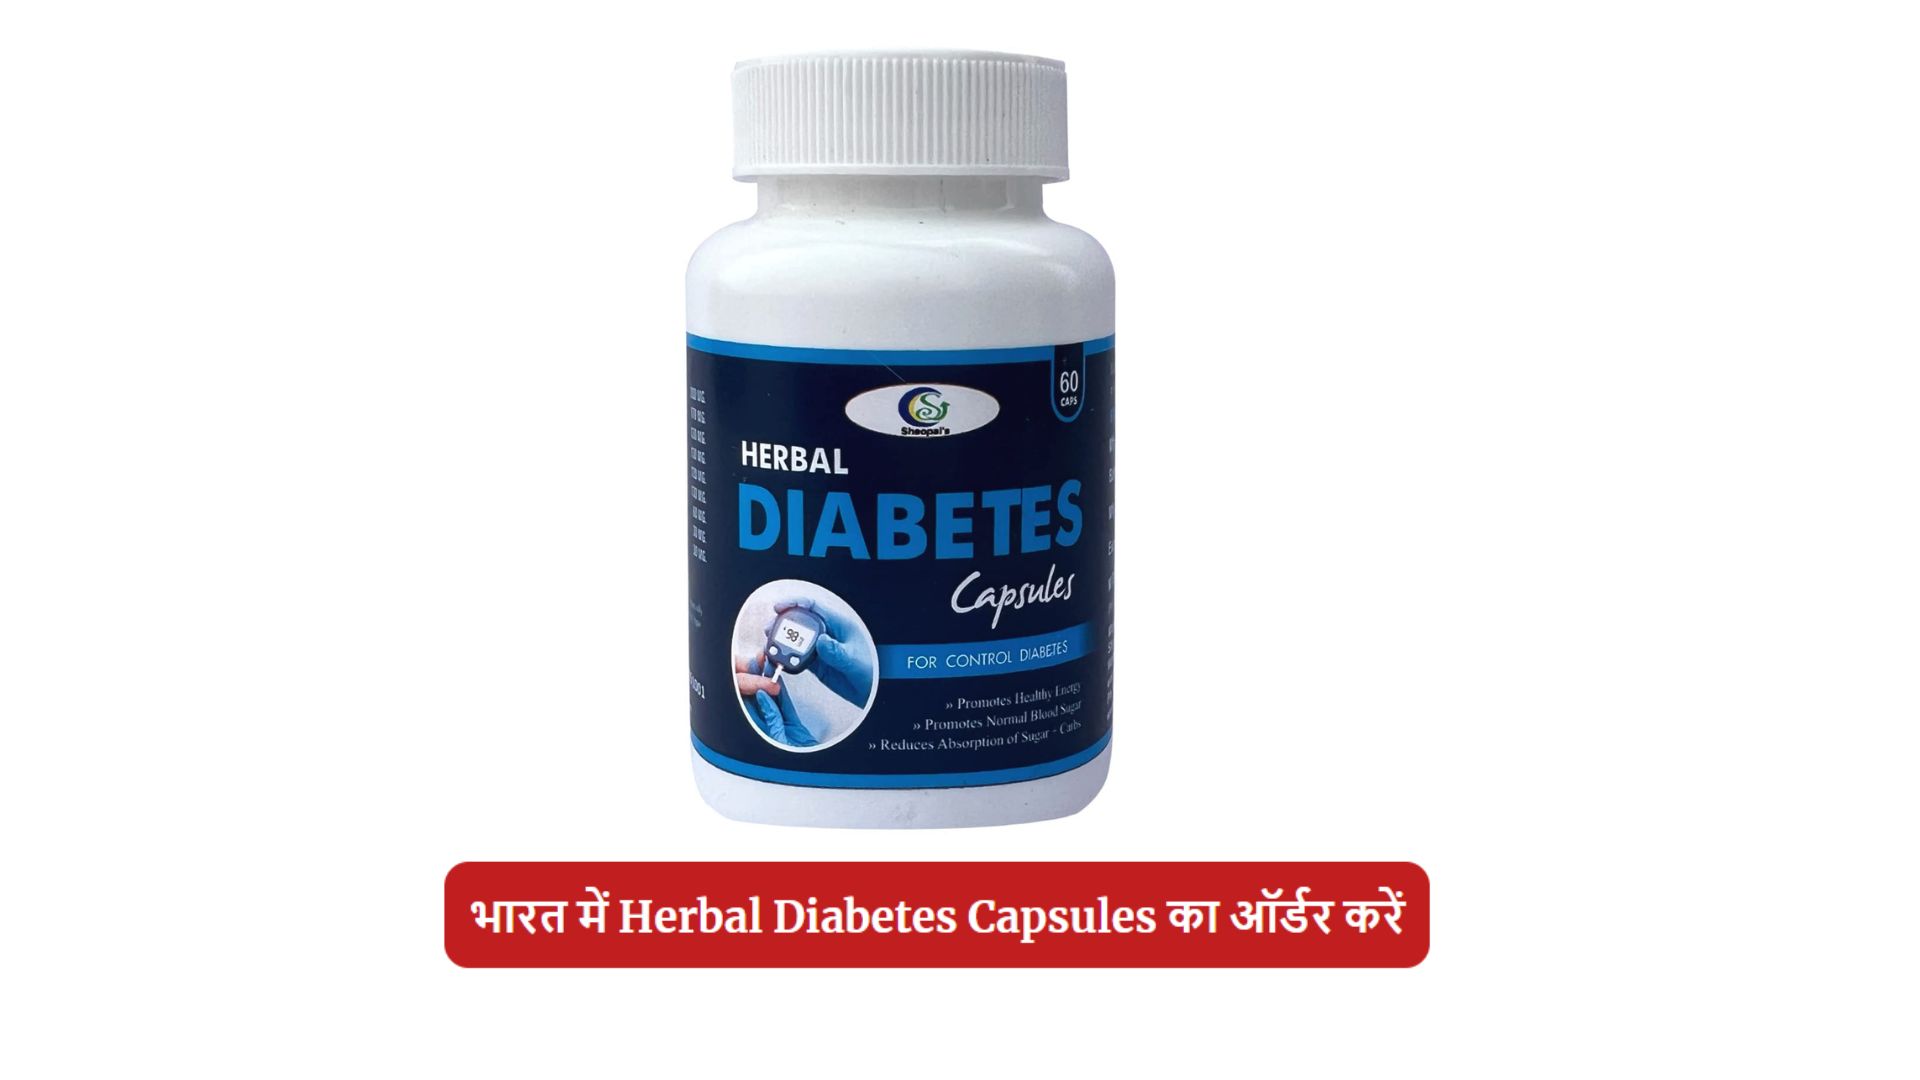 Sheopal's Herbal Diabetes Capsule